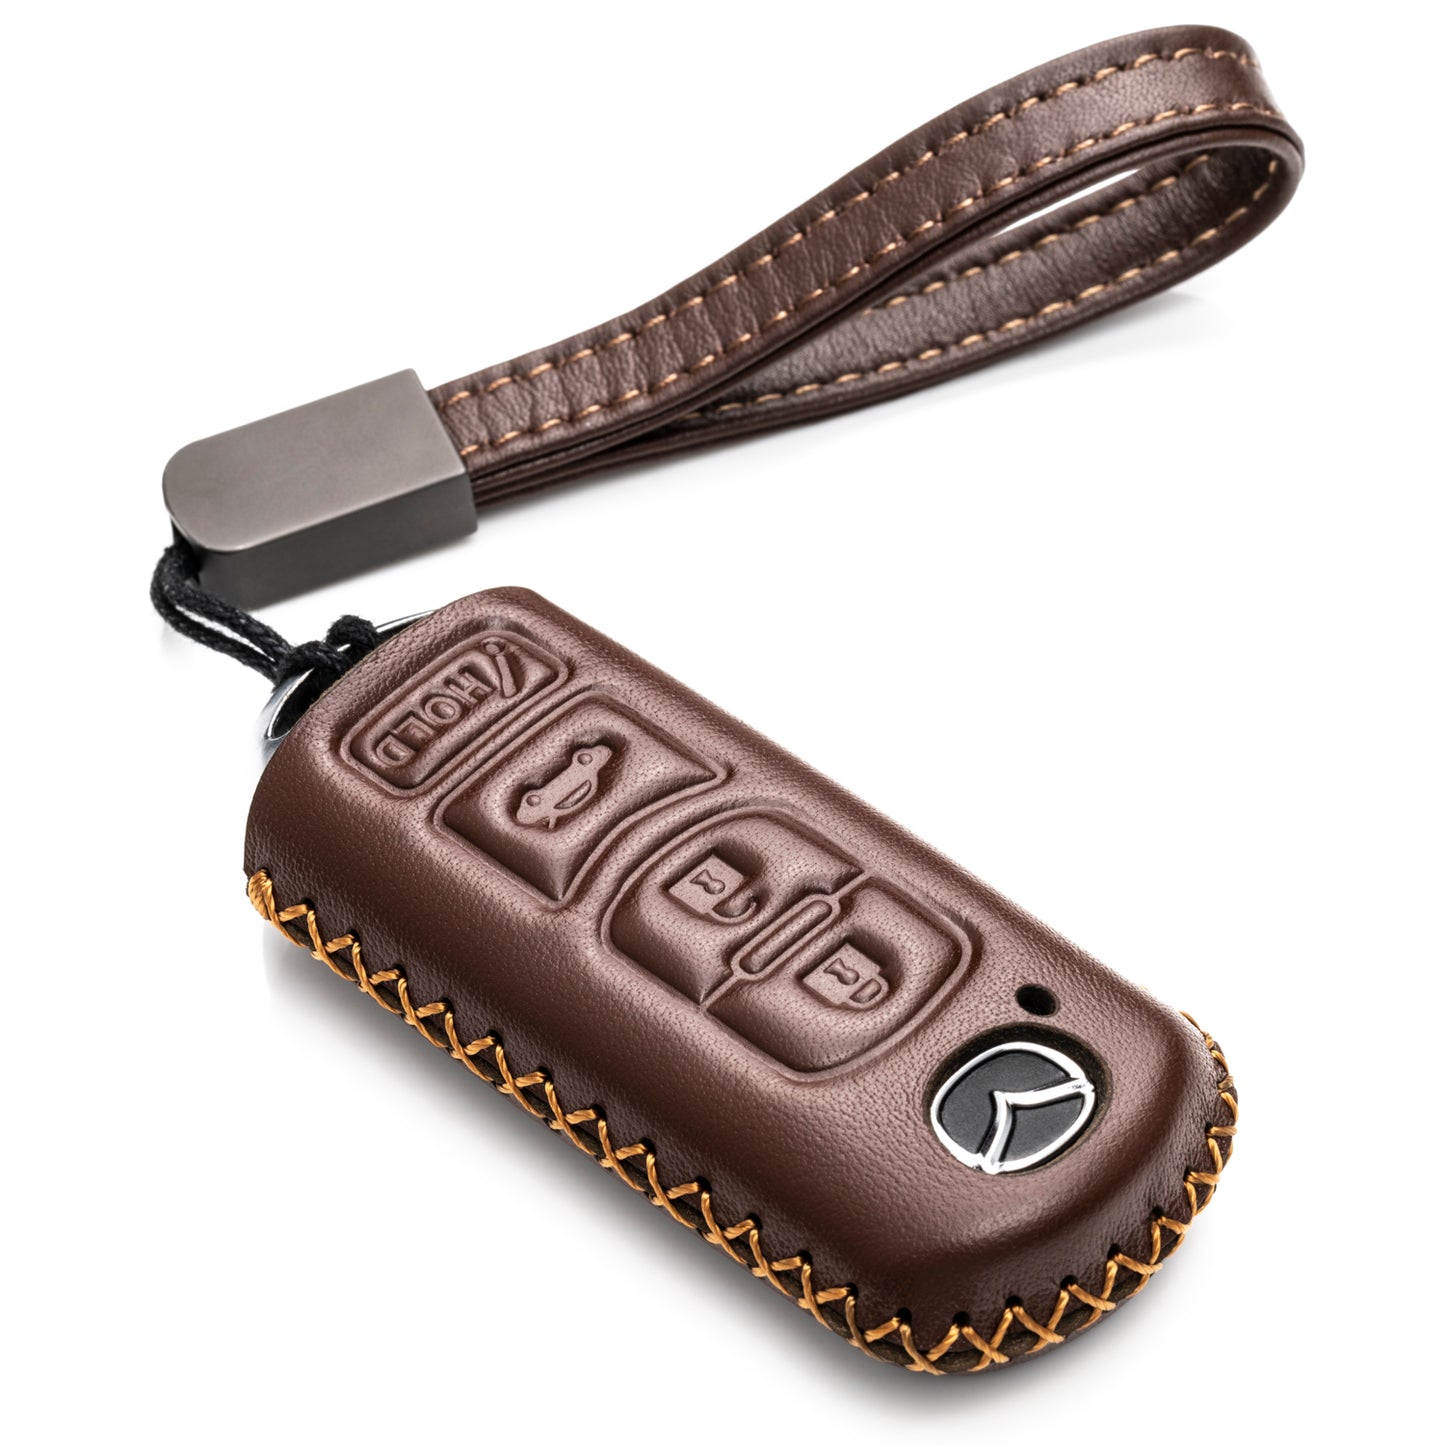 Vitodeco 4-Button Genuine Leather Smart Key Fob Case Cover Protector Compatible for Mazda 3, 6, CX-5, CX-7, CX-9, MX-5 Miata, Atenza Axela